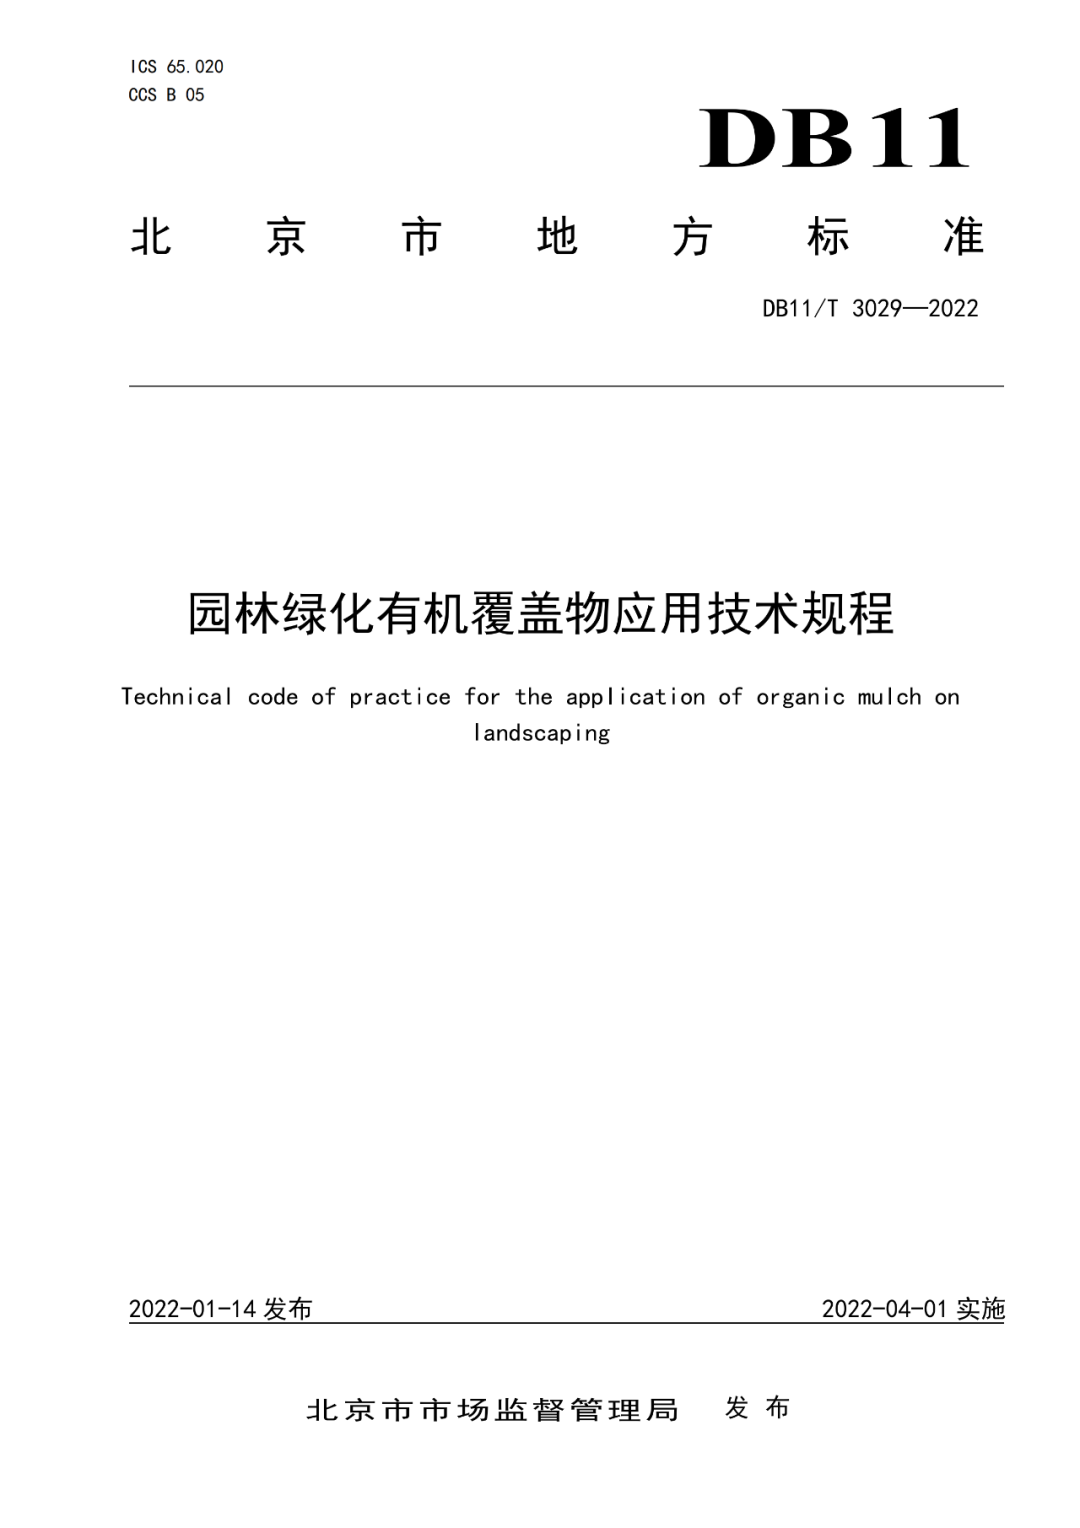 京津冀标准《园林绿化有机覆盖物应用技术规程》正式发布